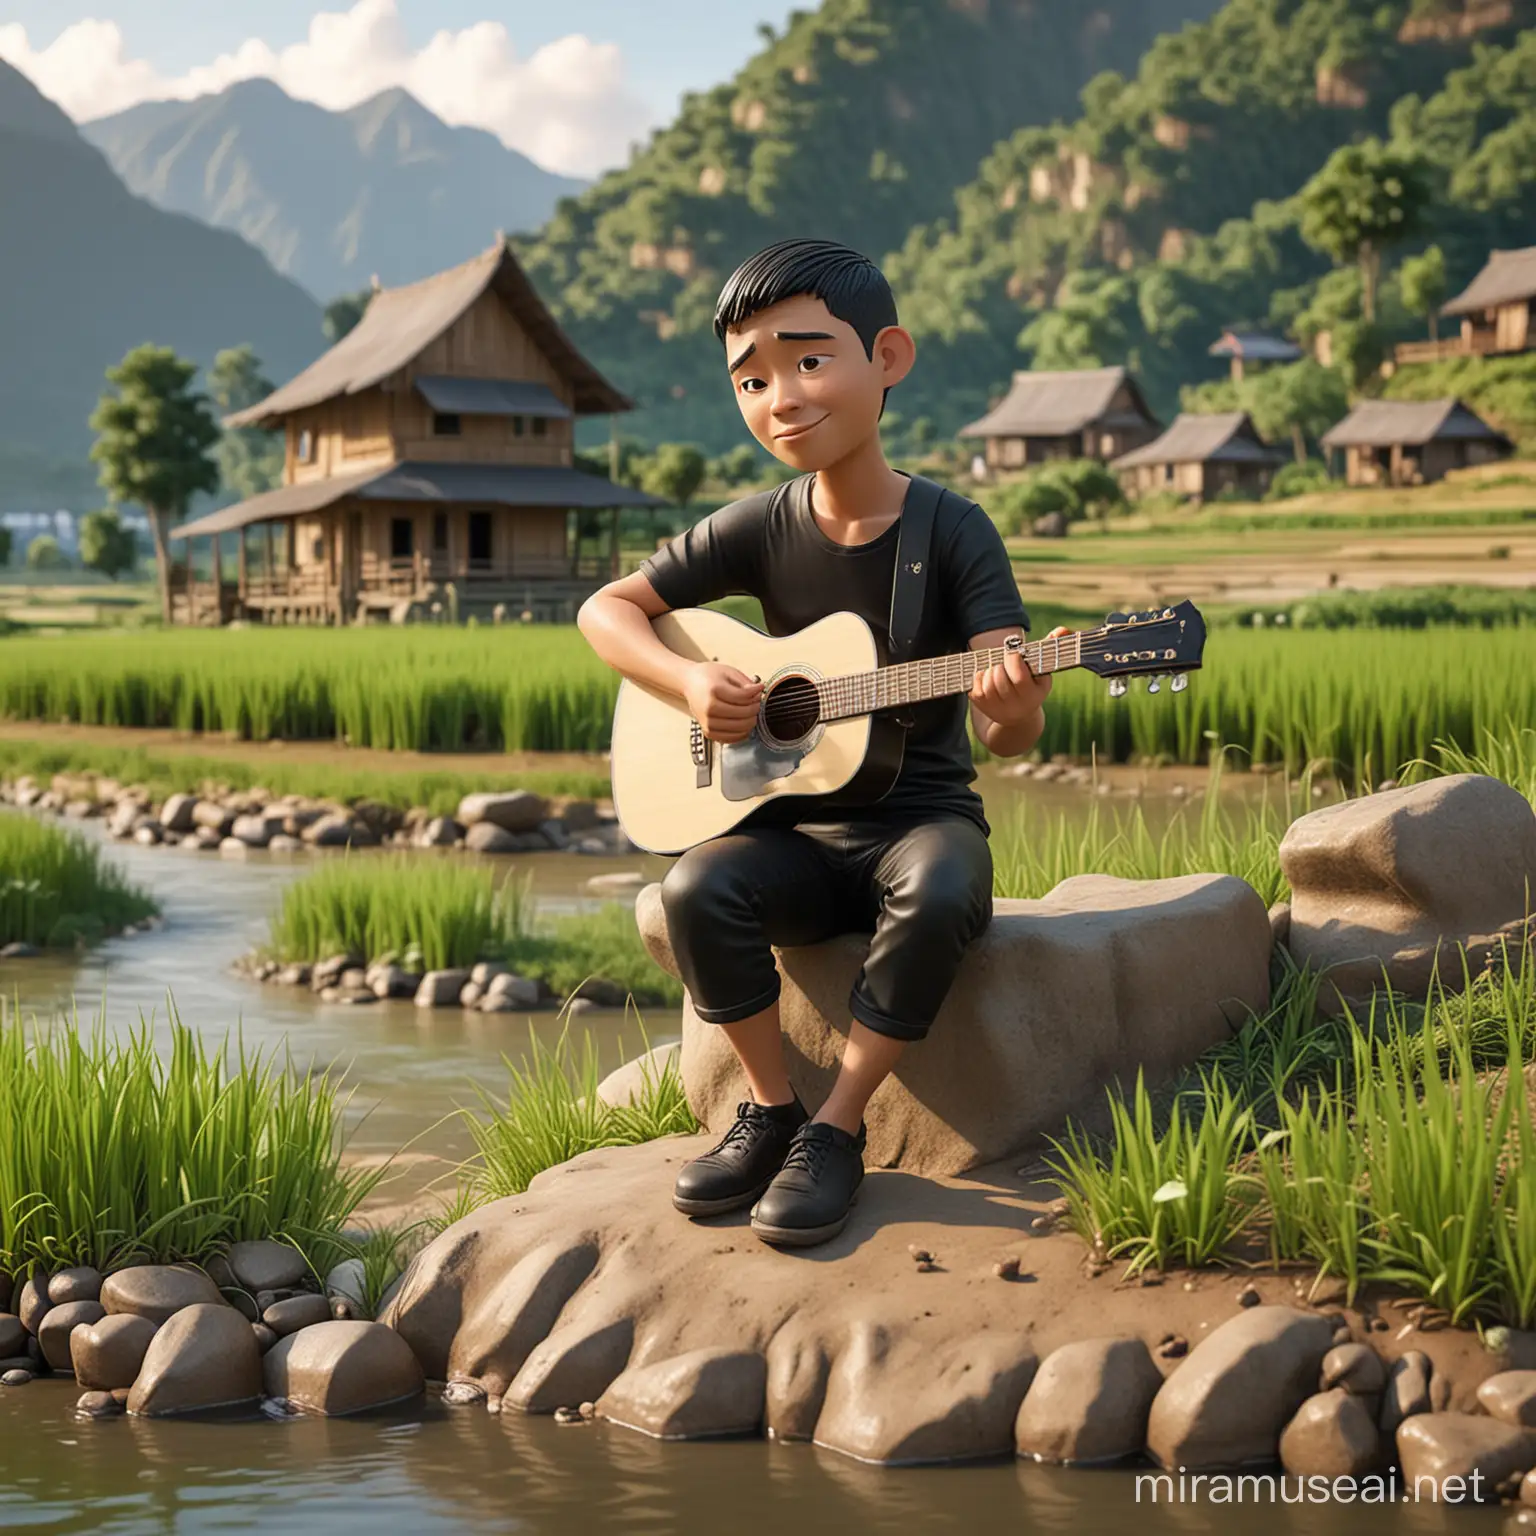  pria sedang duduk main gitar acustik berwajah normal, kaos hitam, potongan cepak, pose polos, badan full suasana alam gunung sawah sungai duduk di eepan rumah sungai, karakter karikatur miniatur 3D